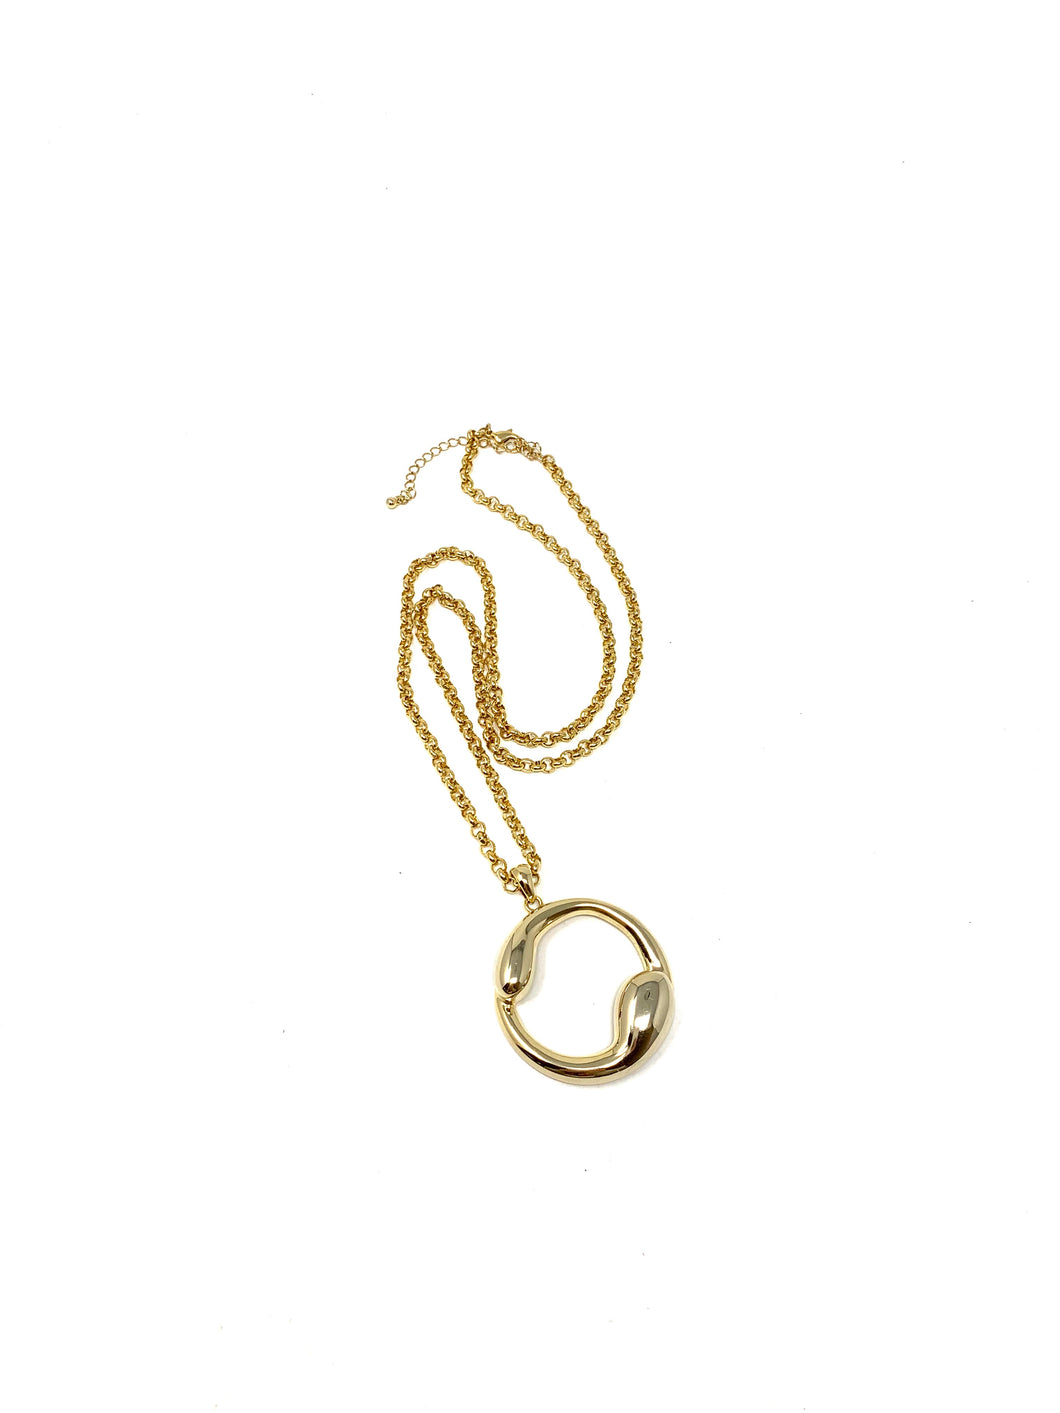 Abstract Ying Yang Gold Tone Circle Necklace